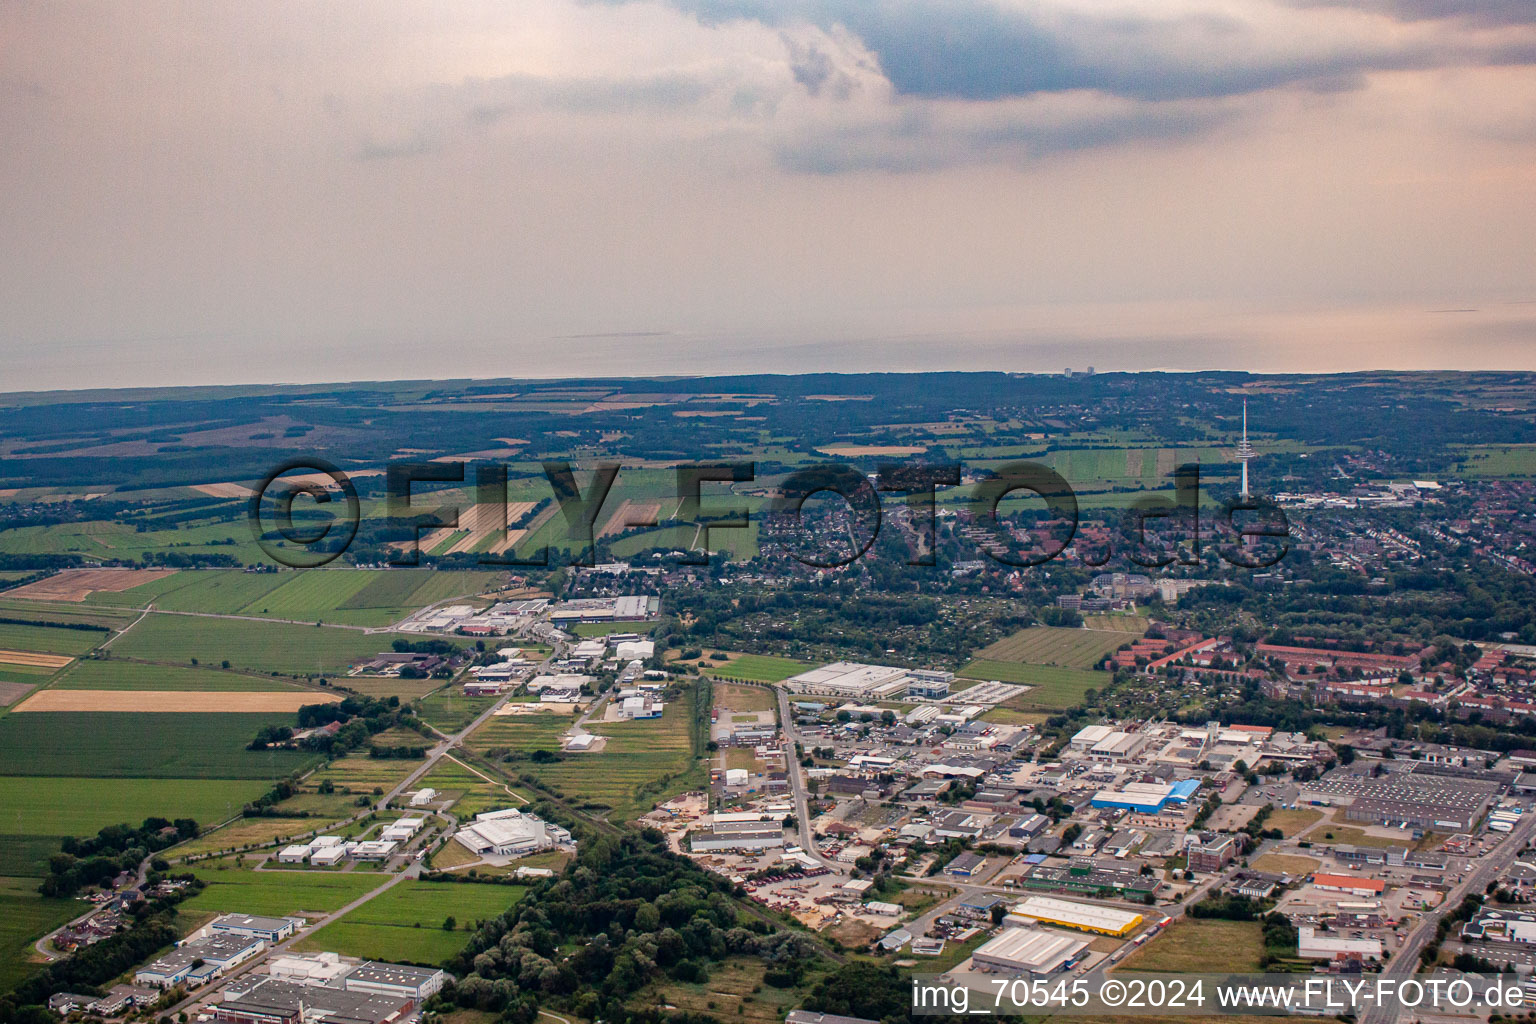 Vue aérienne de Zone industrielle Alte Industriestr à Cuxhaven dans le département Basse-Saxe, Allemagne